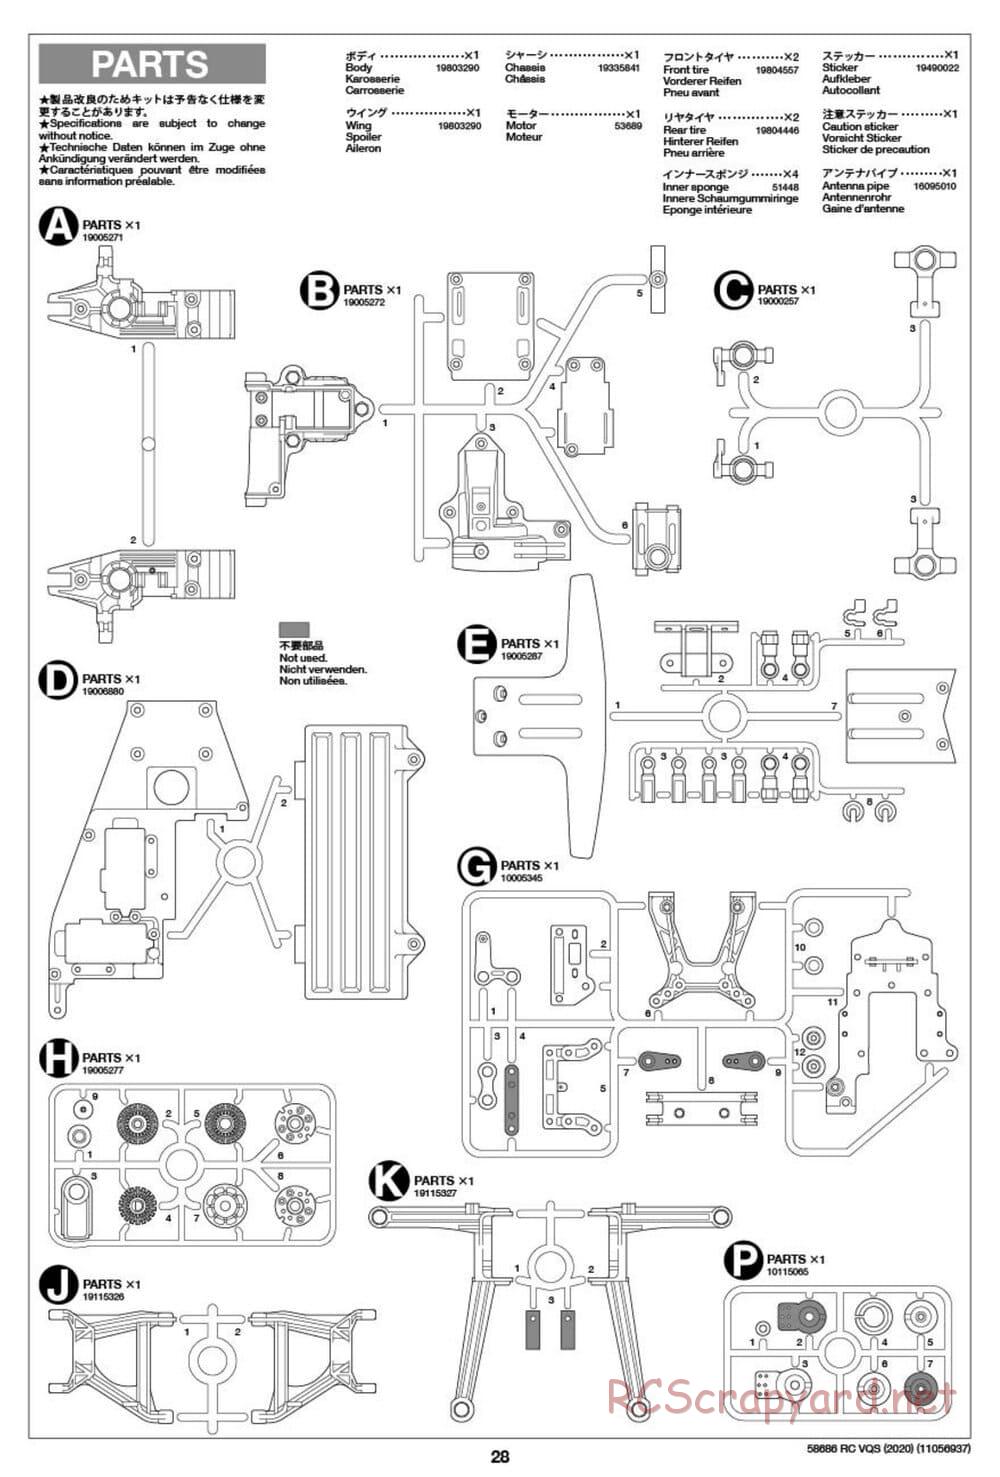 Tamiya - VQS (2020) - AV Chassis - Manual - Page 28